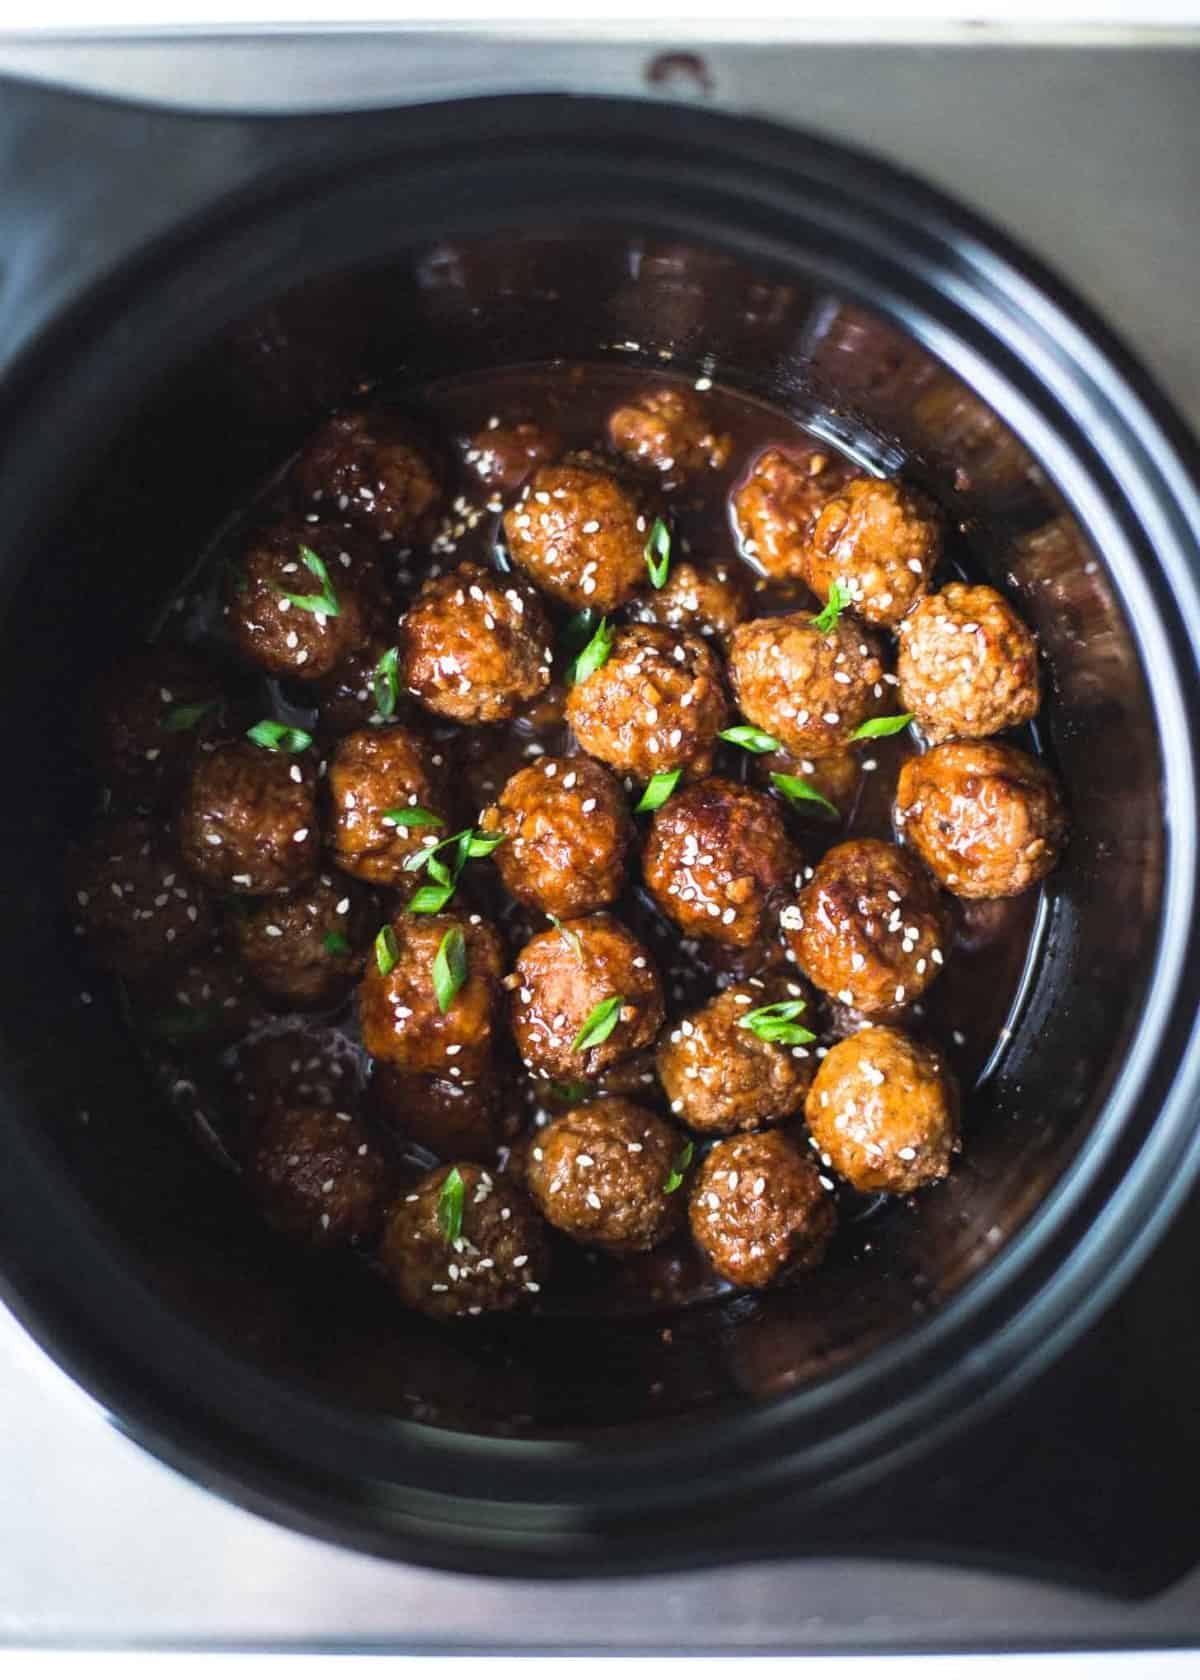 Slow-Cooker Hoisin Turkey Meatballs